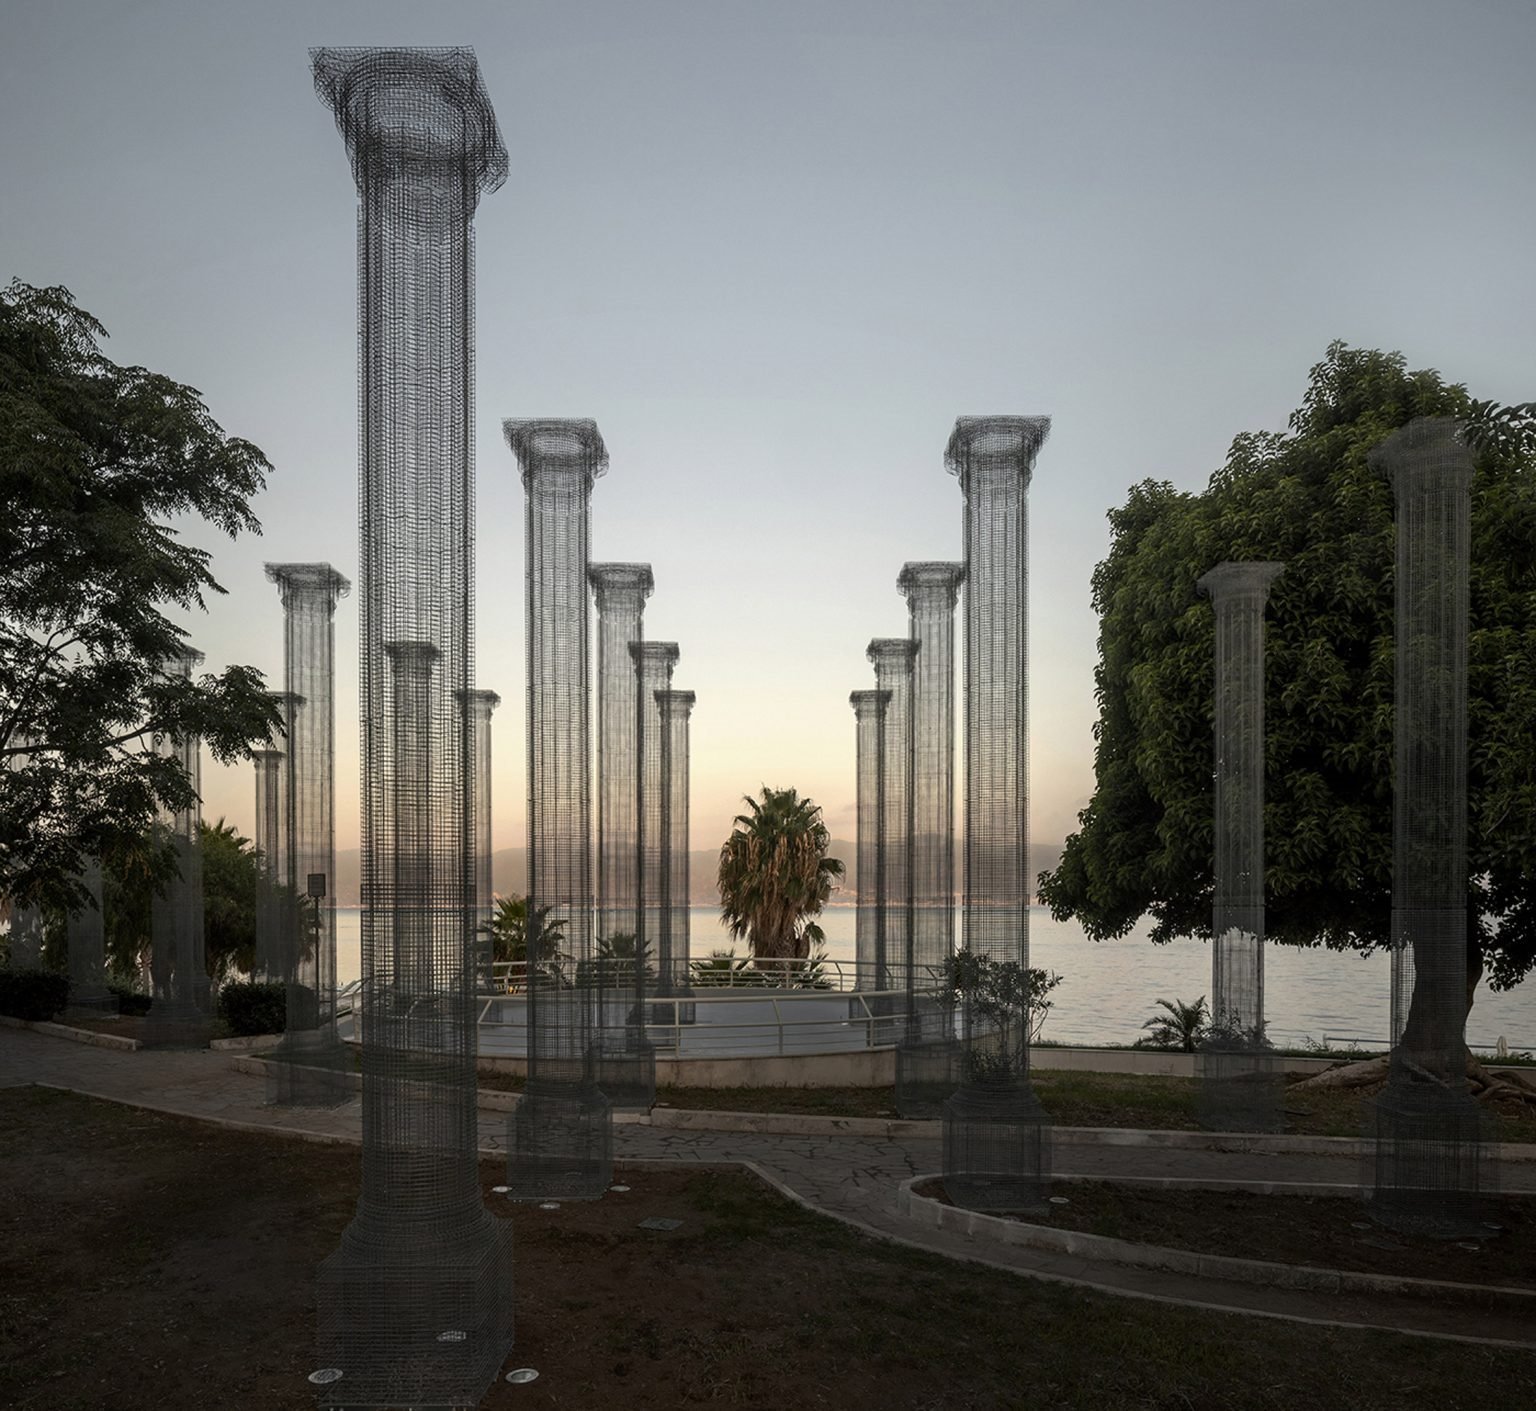 Atardecer con Columnas metalicas por Edoardo Tresoldi en la ciudad siciliana de Reggio Calabria